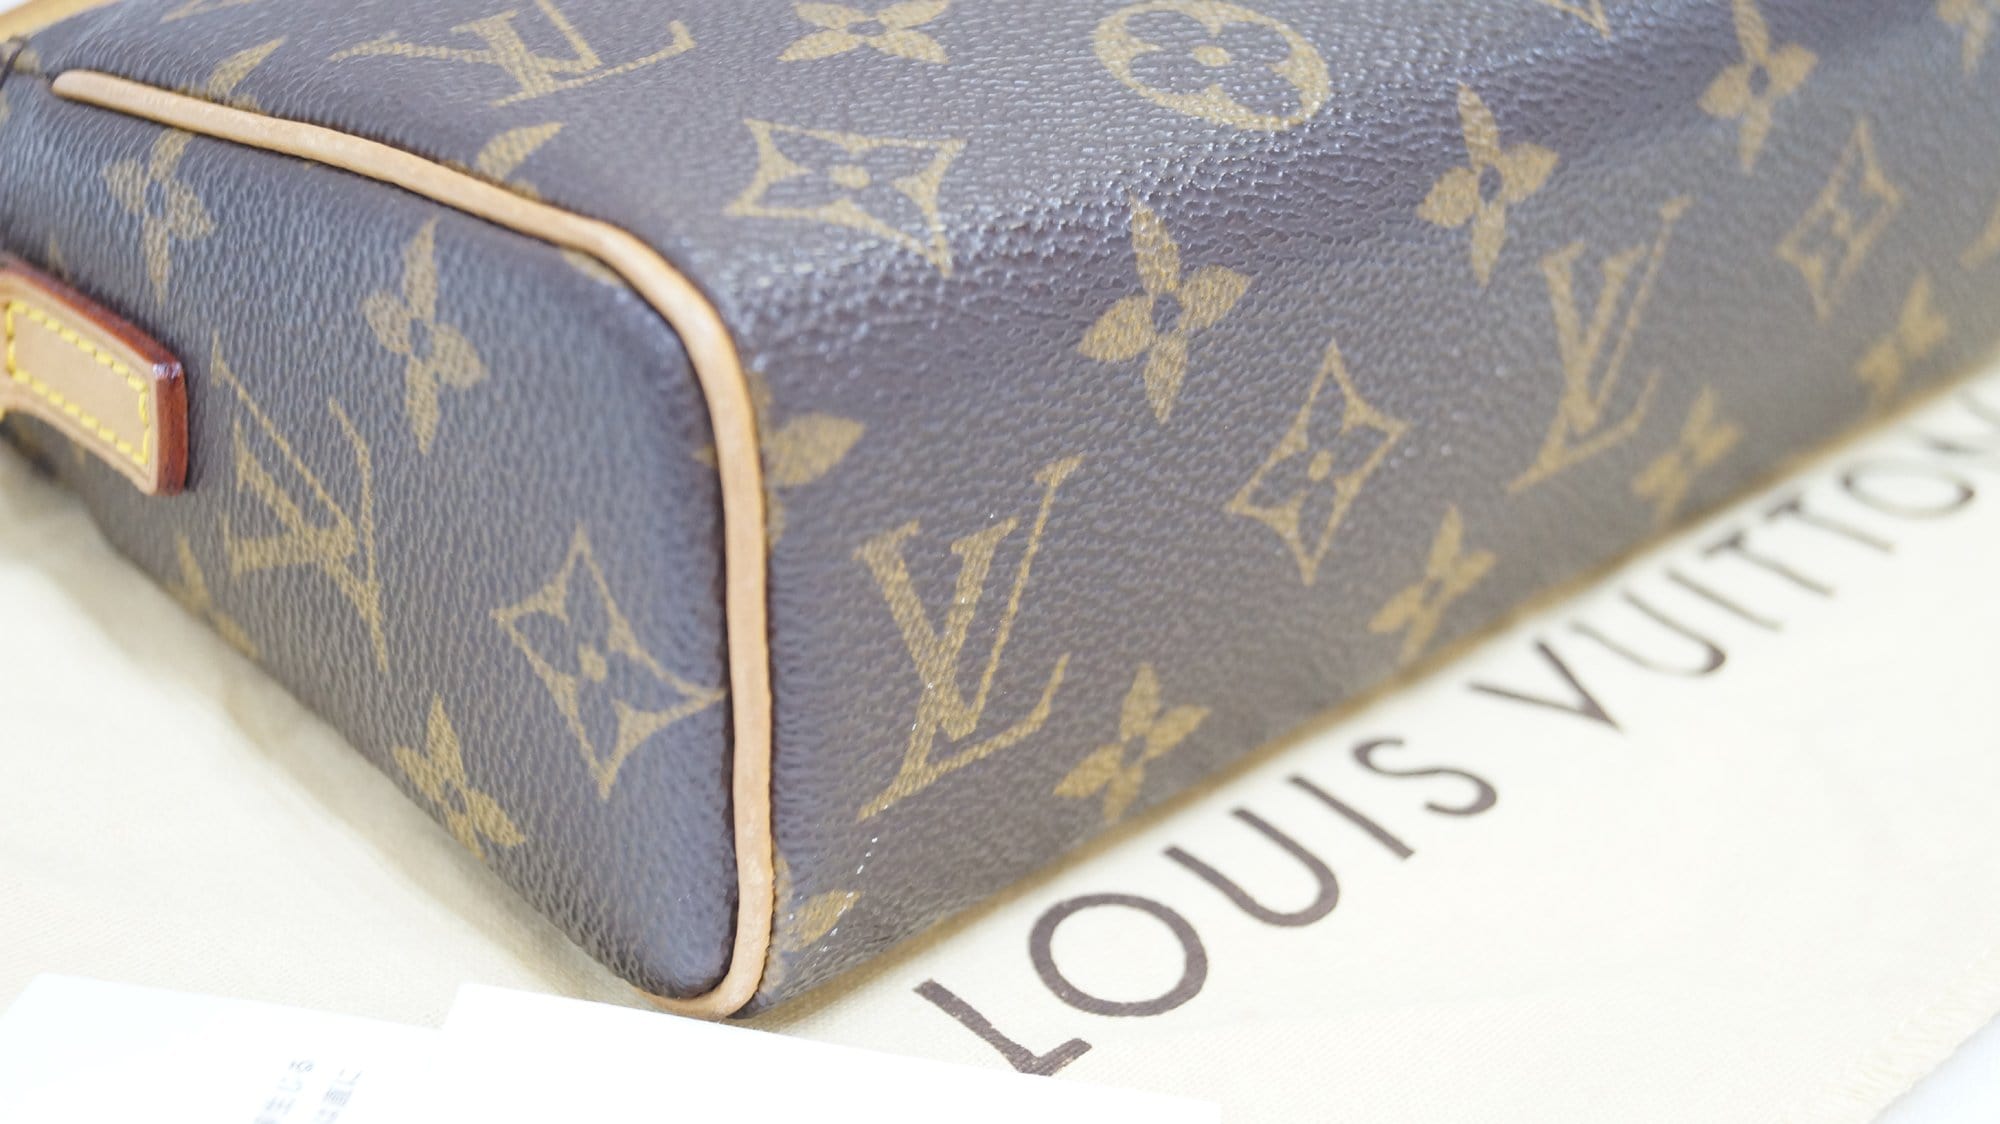 Louis Vuitton Recital Bag  Bags, Vuitton, Louis vuitton